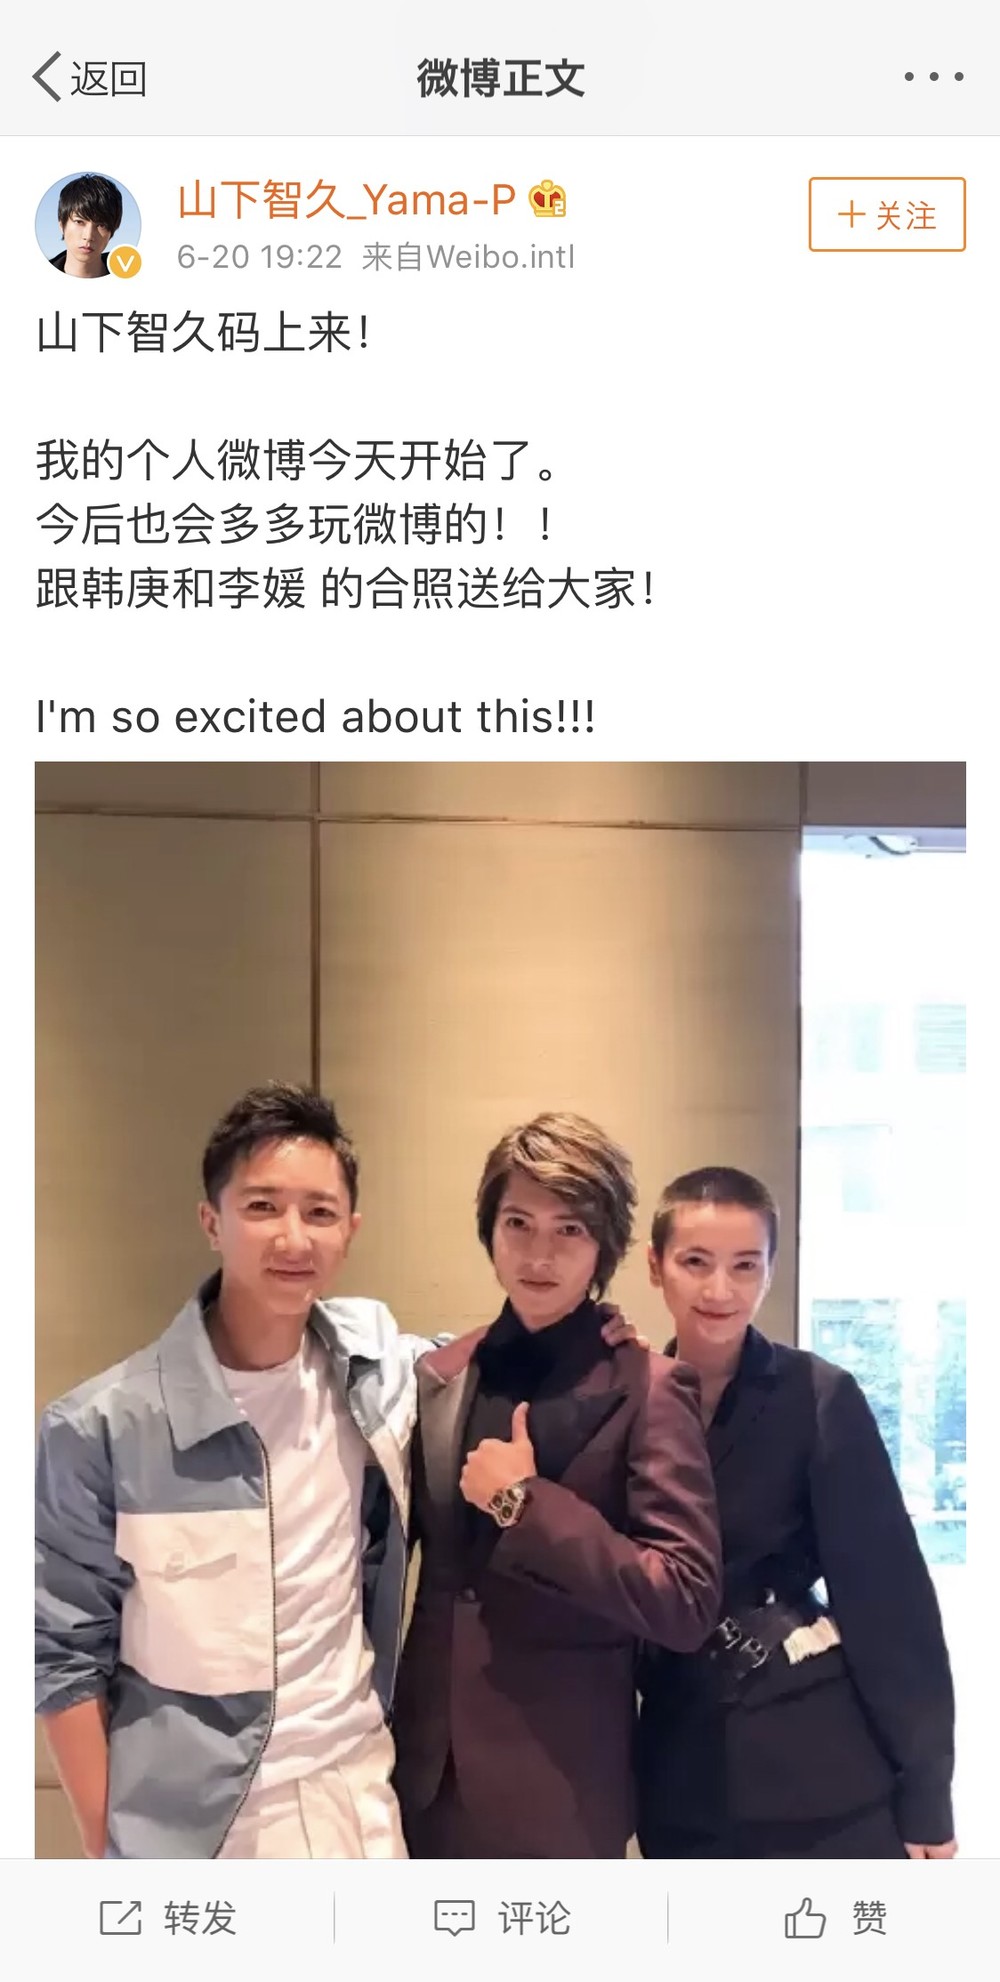 山下智久さんの微博（ウェイボー、Weibo）のアカウント。すでにフォロワーは20万人を超えている（写真は山下さんの公式アカウントから）